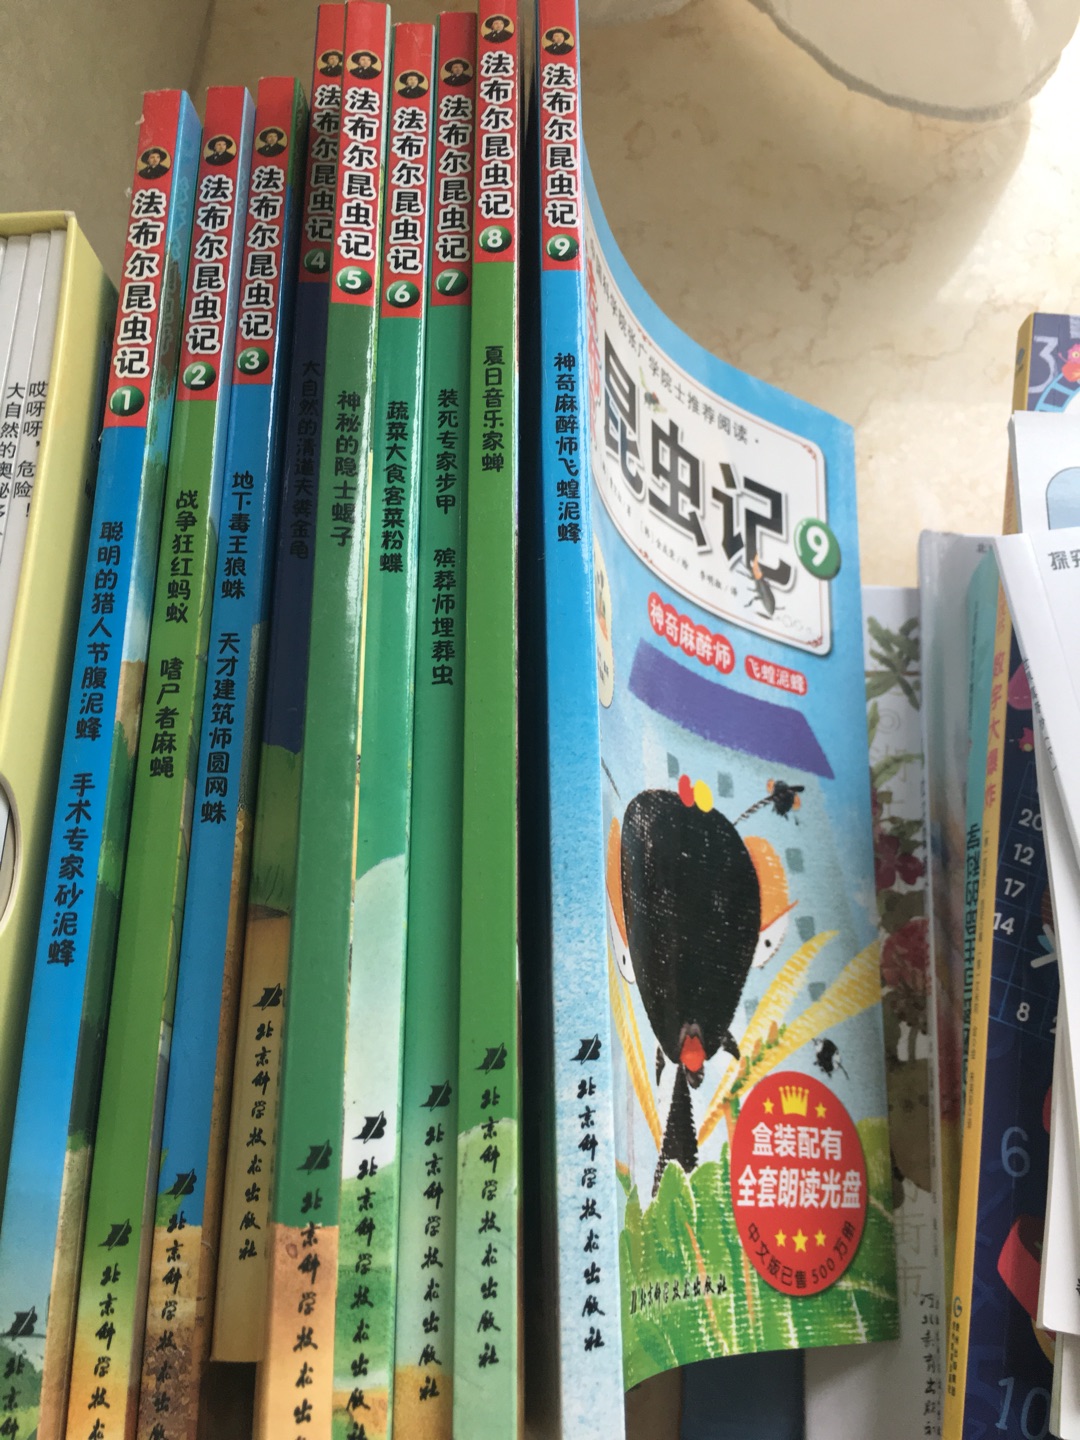 这套非故事类绘本也很棒，教孩子认识各种虫子，家里书太多了，真的不能再买了，要多多看书了。